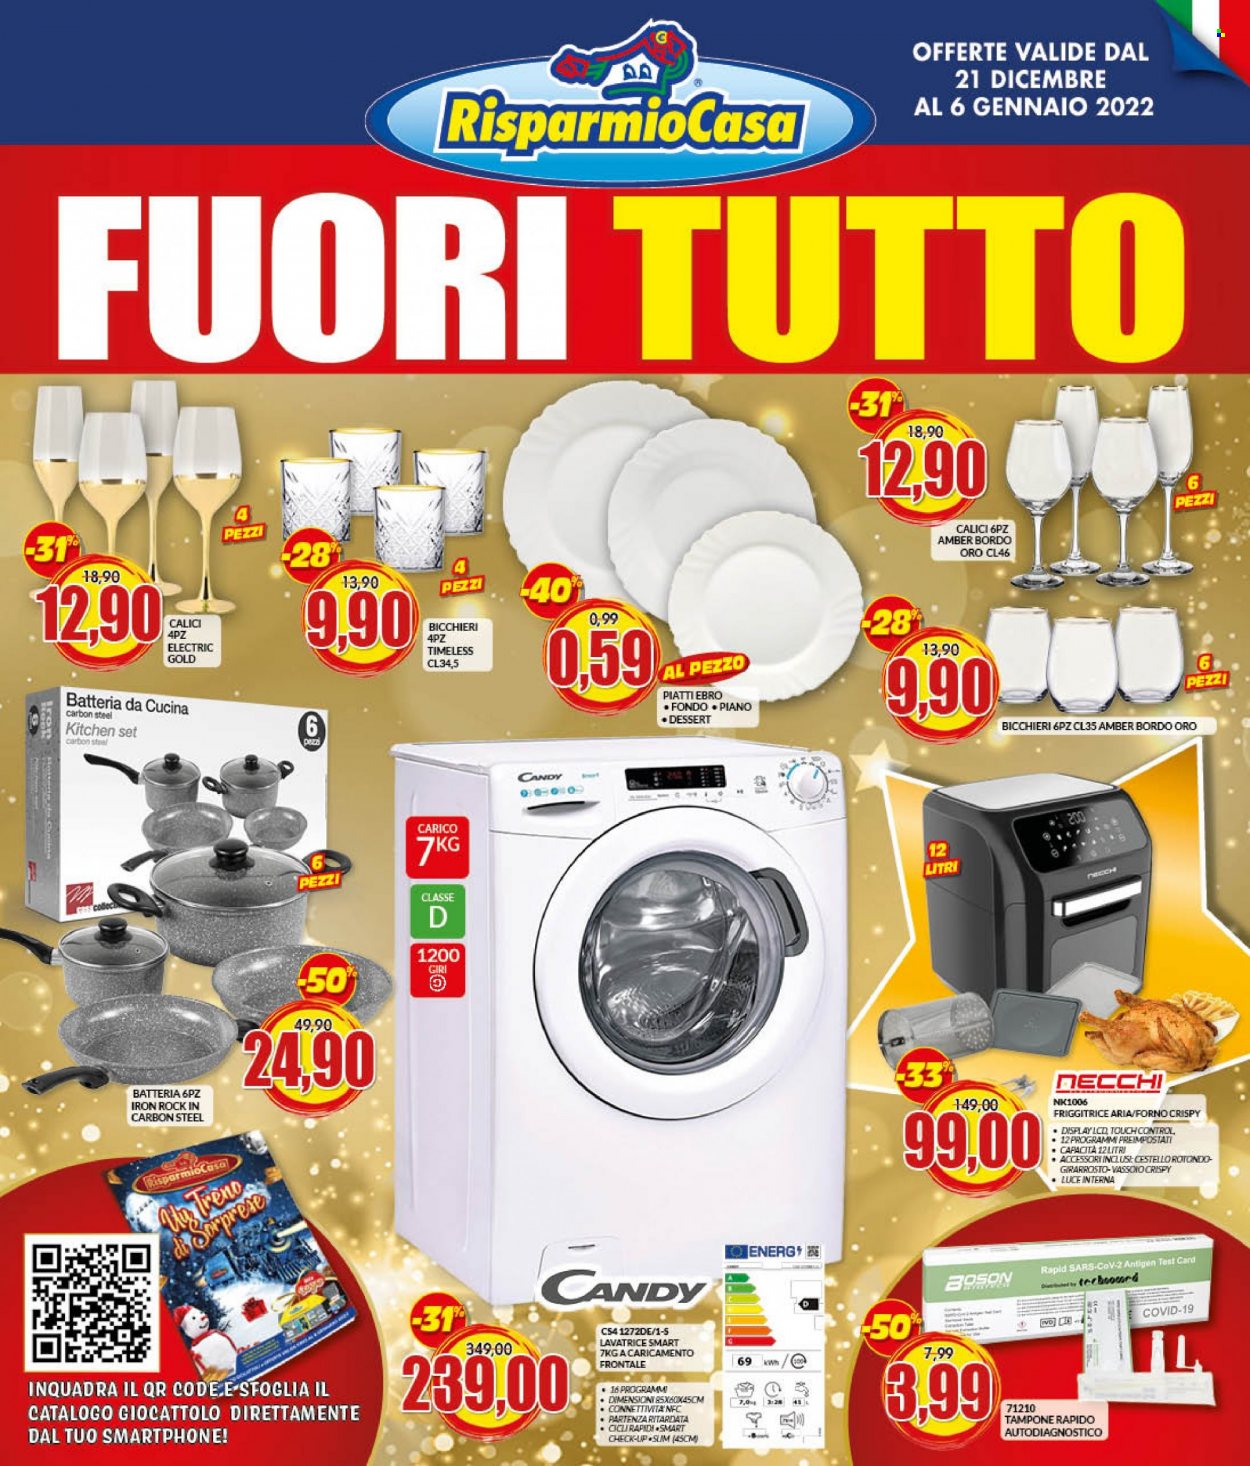 thumbnail - Volantino Risparmio Casa - 21/12/2021 - 6/1/2022 - Prodotti in offerta - bicchieri, piatti, friggitrice, calice, Candy, forno, lavatrice, giocattoli. Pagina 1.